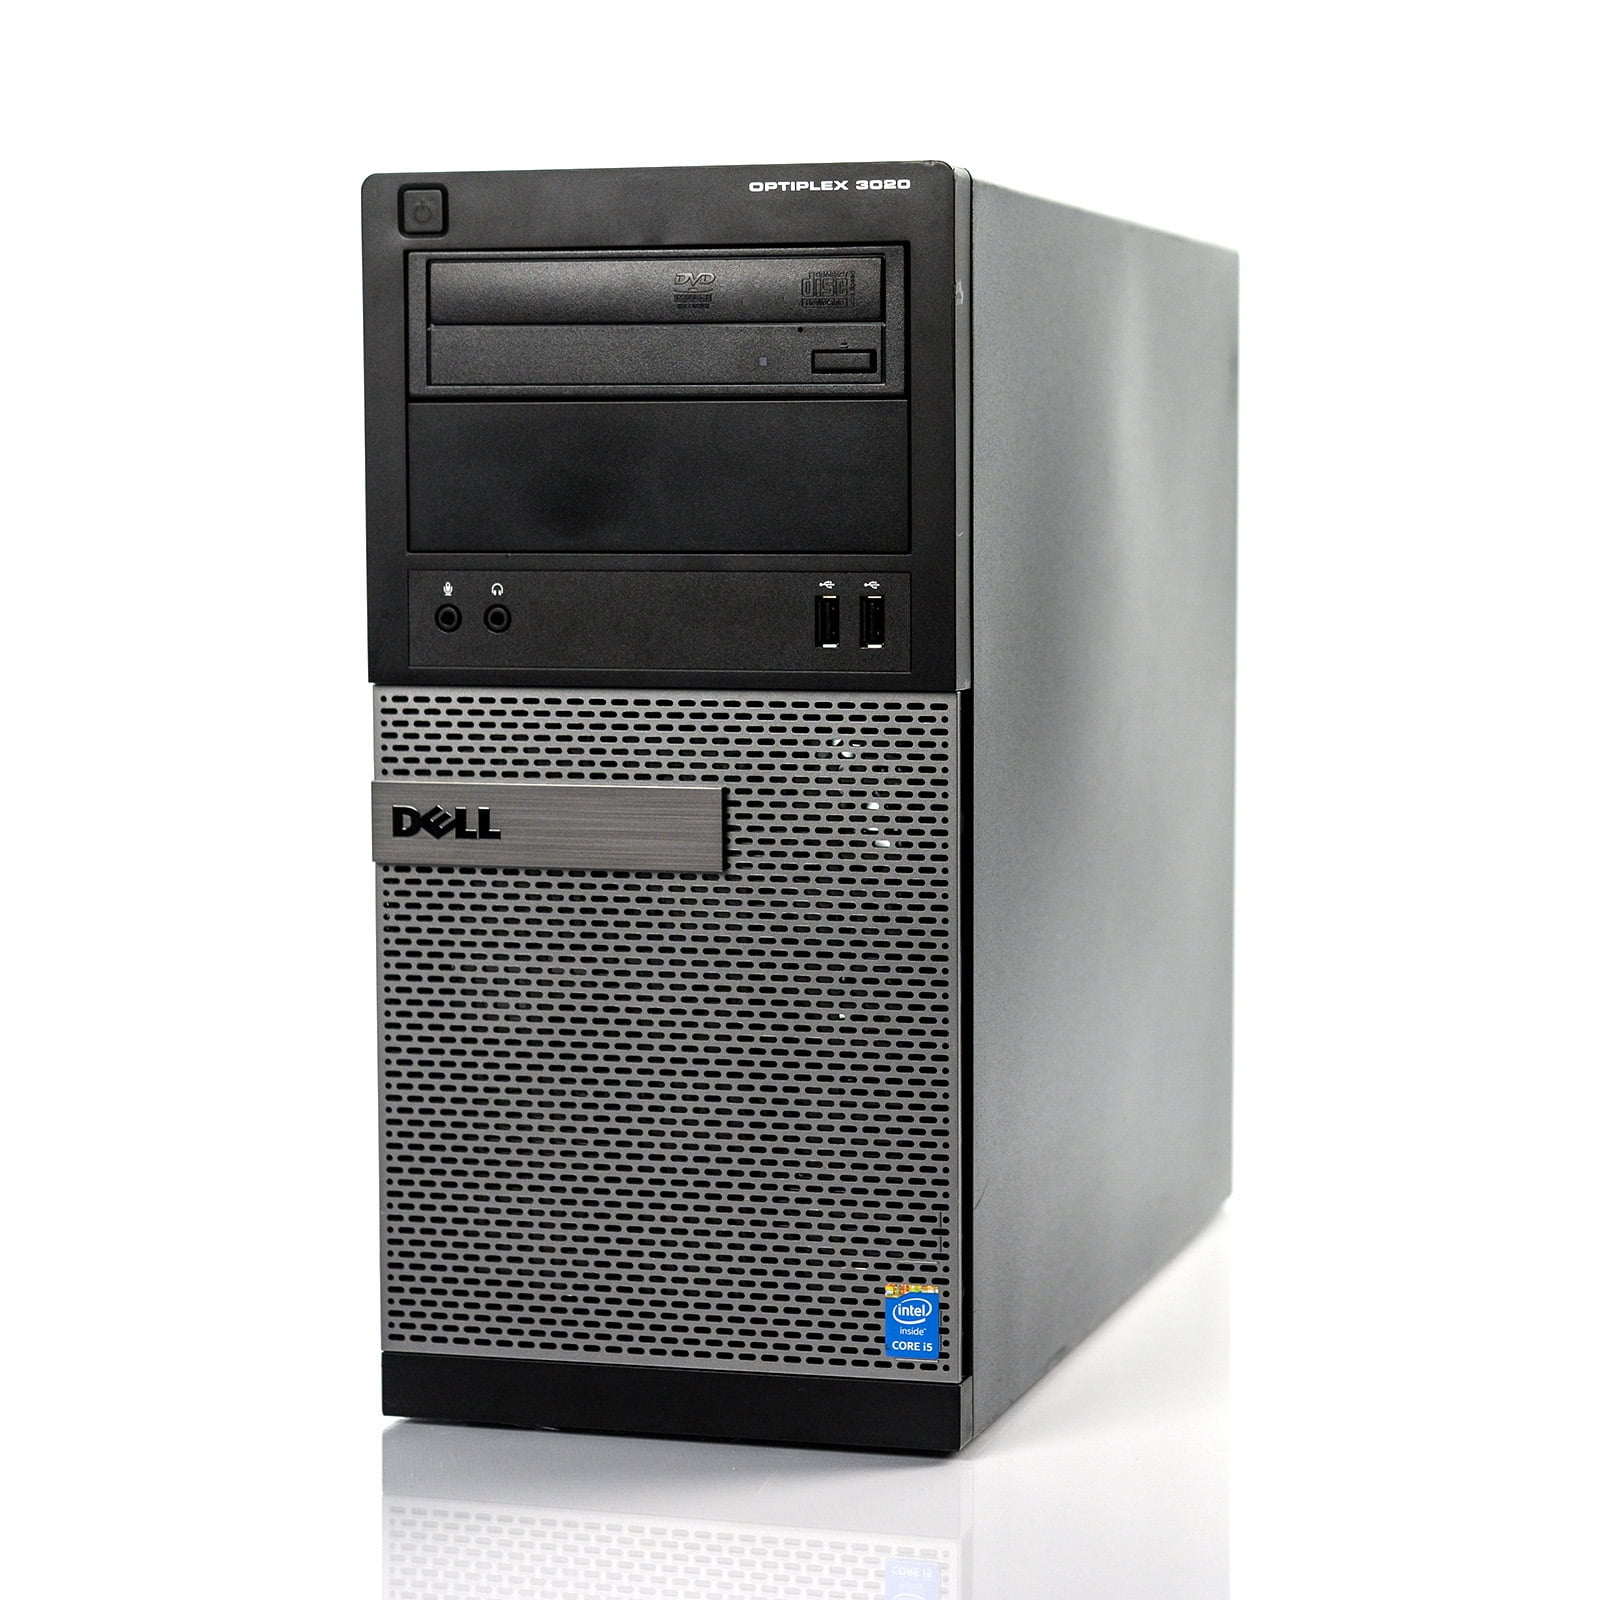 Dell Optiplex 3020 MT Desktop Tower Computer, Intel Core i5-4590, 8GB RAM,  128GB SSD, DVD-ROM, Windows 10 Pro, Black (Used)